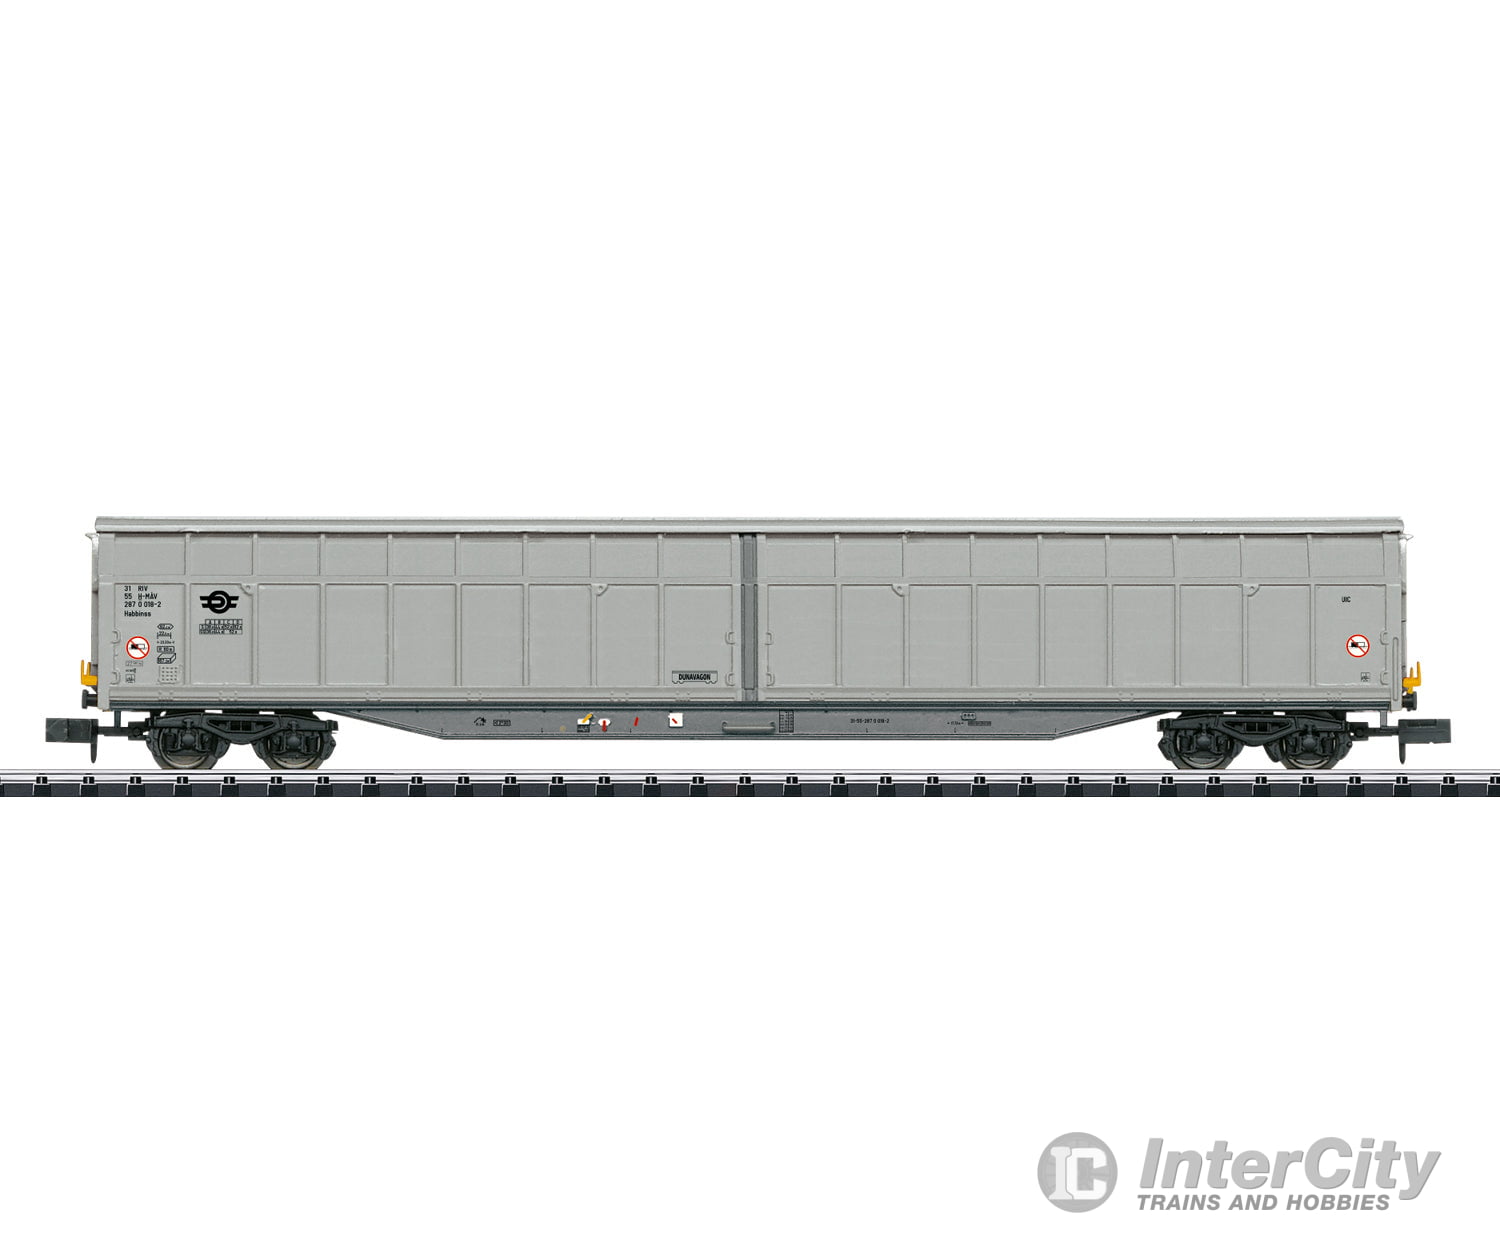 Trix 18448 N High-Capacity Sliding Wall Boxcar European Freight Cars